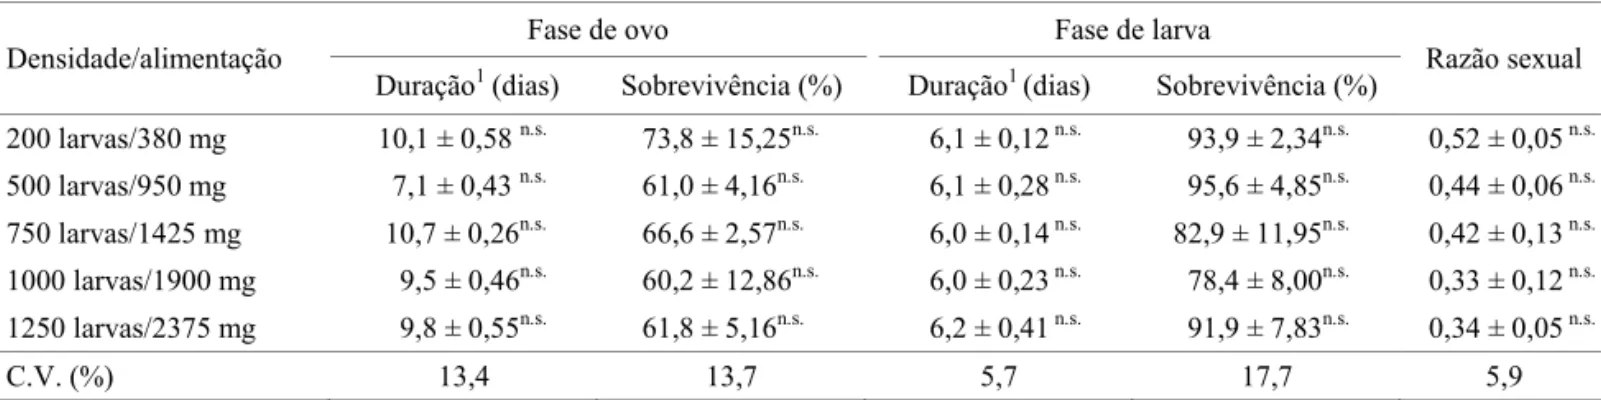 Tabela 2 Duração e sobrevivência das fases de ovo e larva, e razão sexual de Aedes aegypti criado em cinco densidades  larvais com alimentação proporcional ao número de larva.